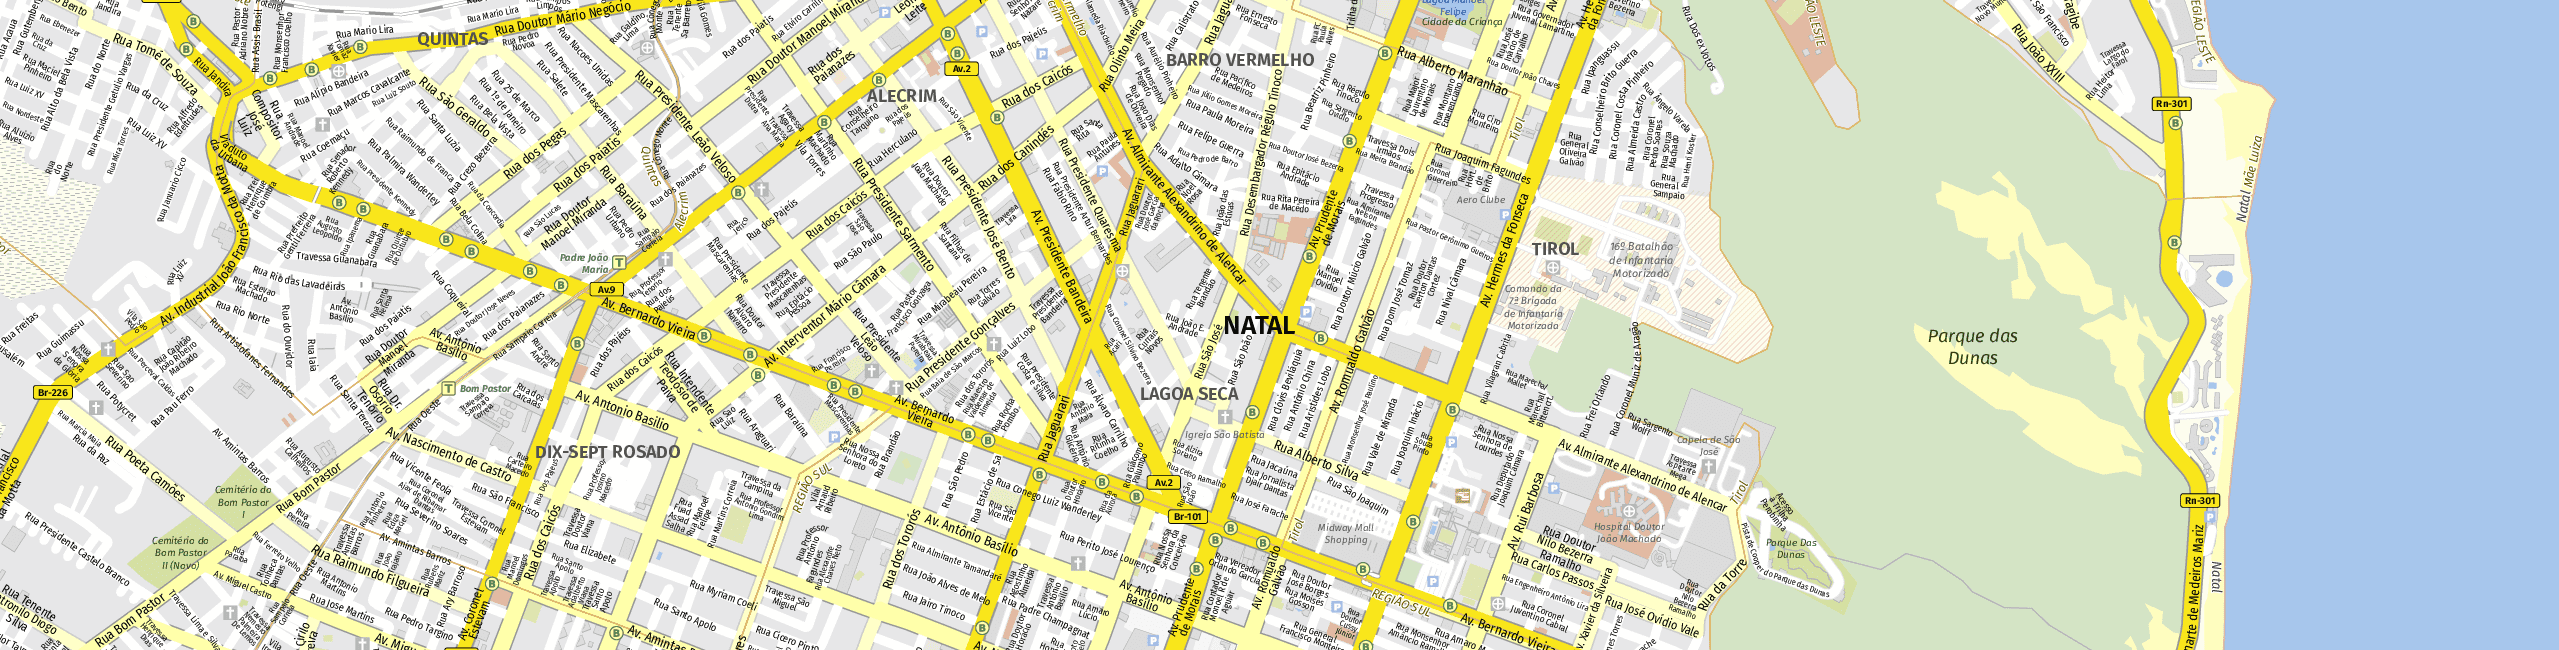 Stadtplan Natal zum Downloaden.